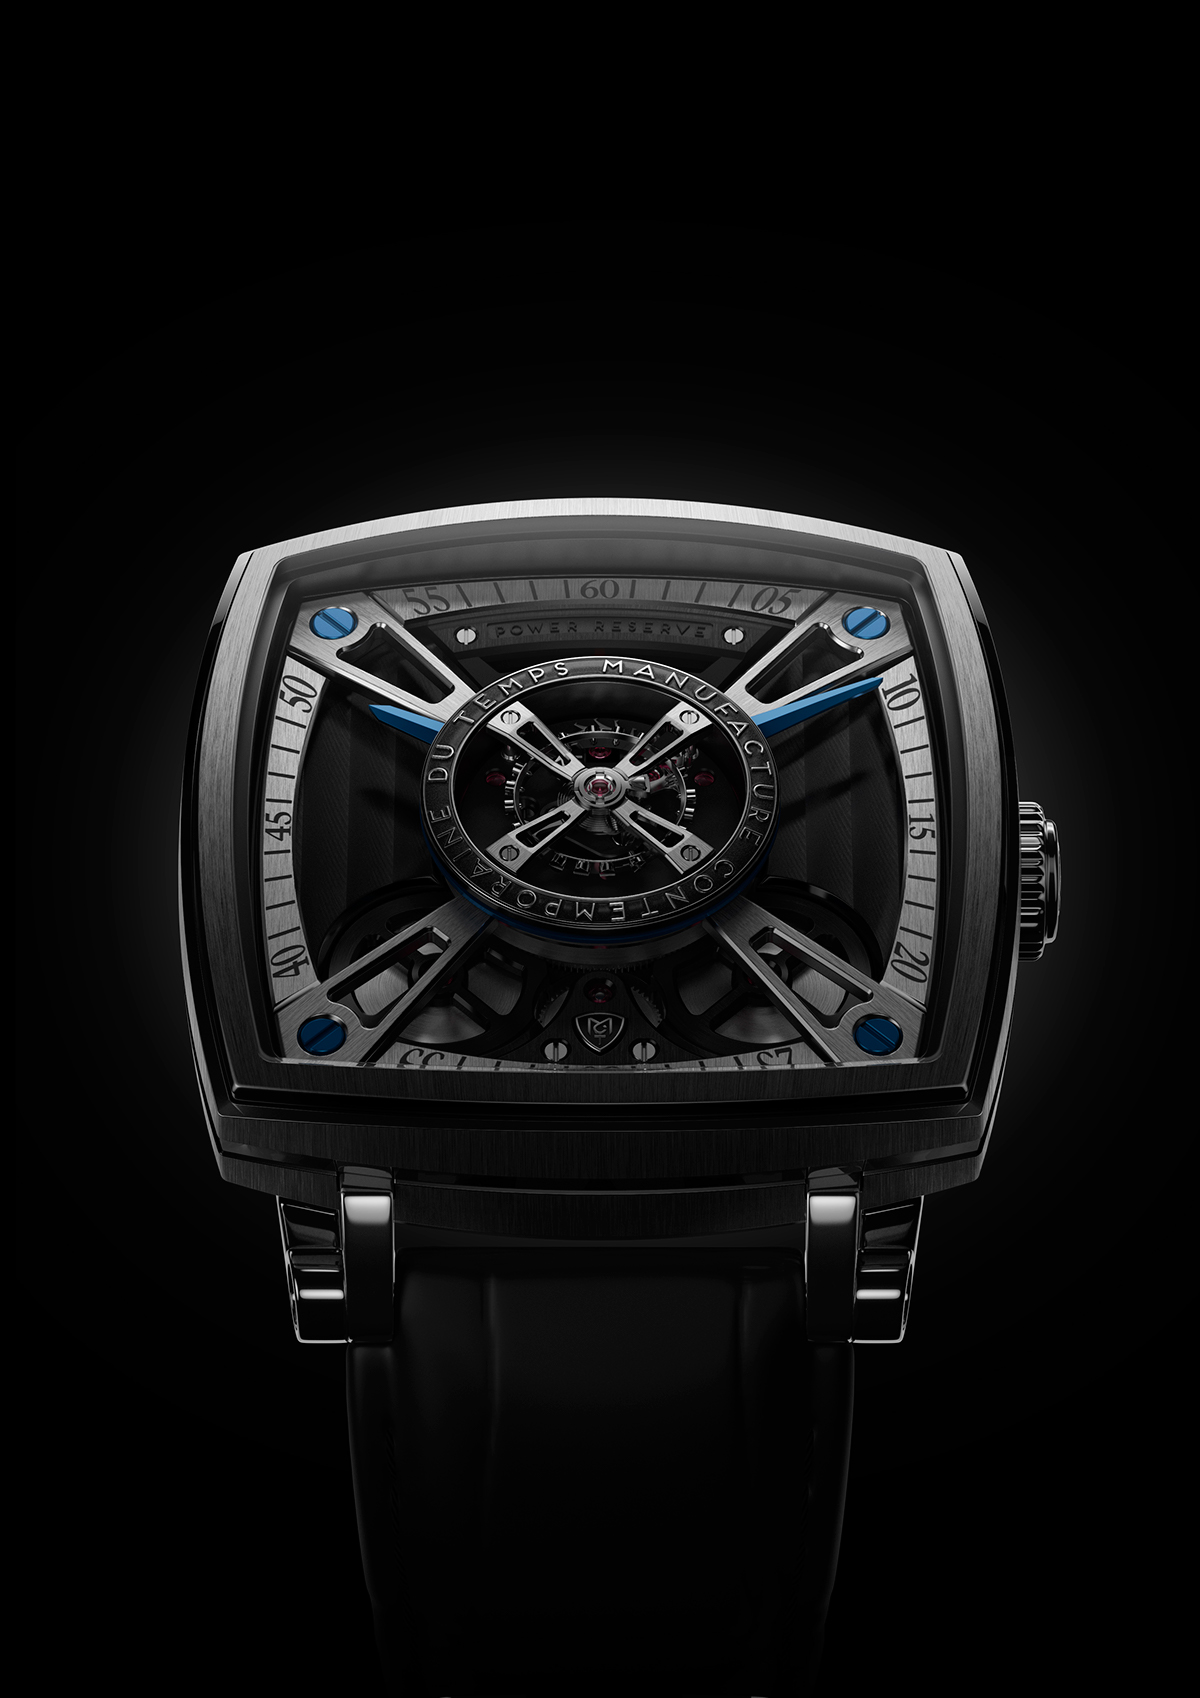 Watches watch design luxury design horology